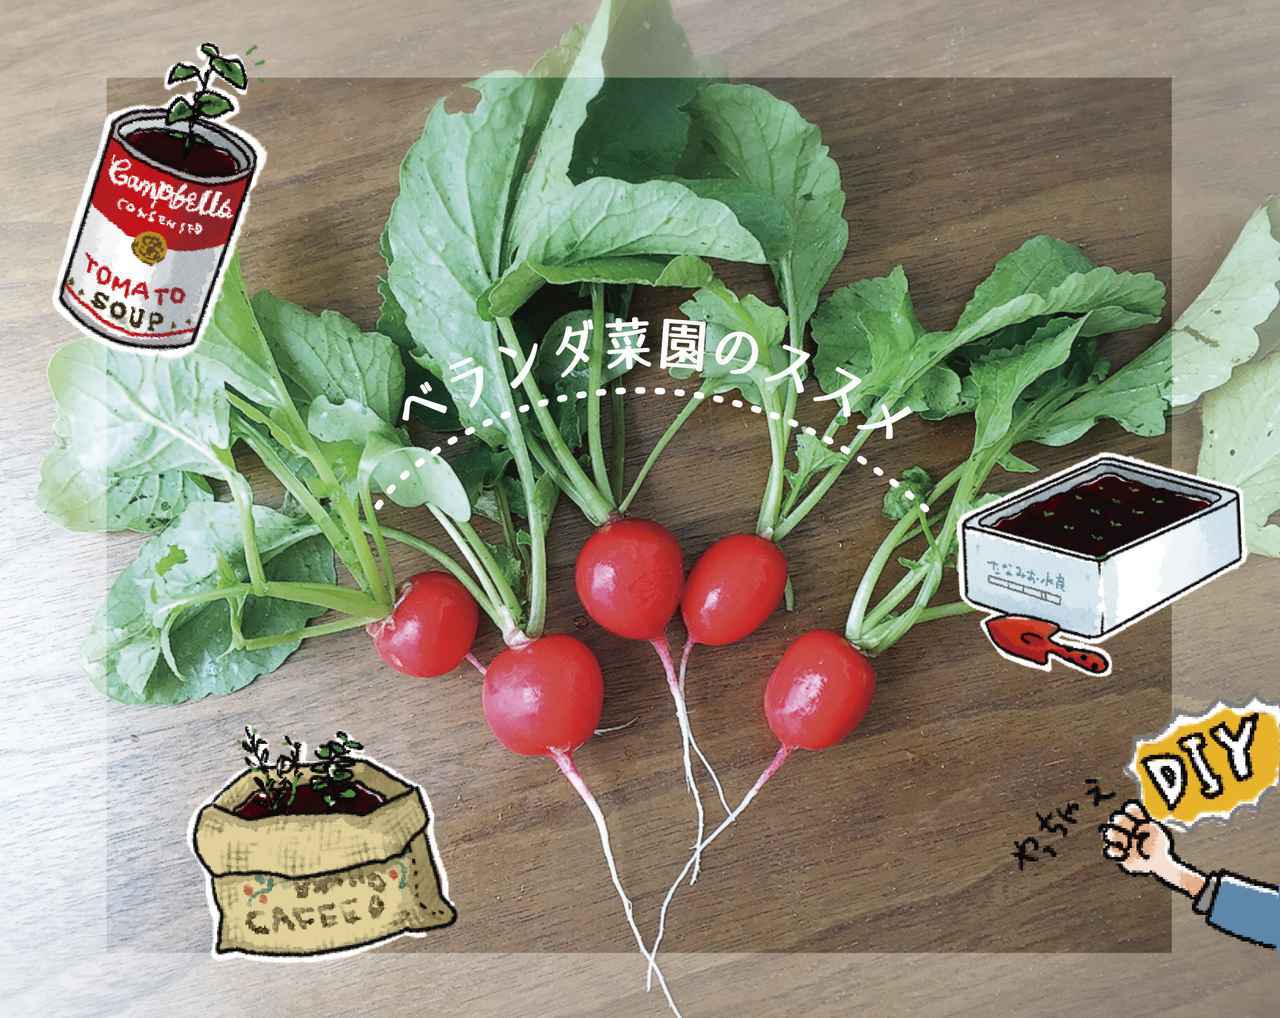 ベランダ菜園を始めよう 自作プランターで簡単 キャンパーにおすすめの野菜紹介 お役立ちキャンプ情報 年06月04日 日本気象協会 Tenki Jp